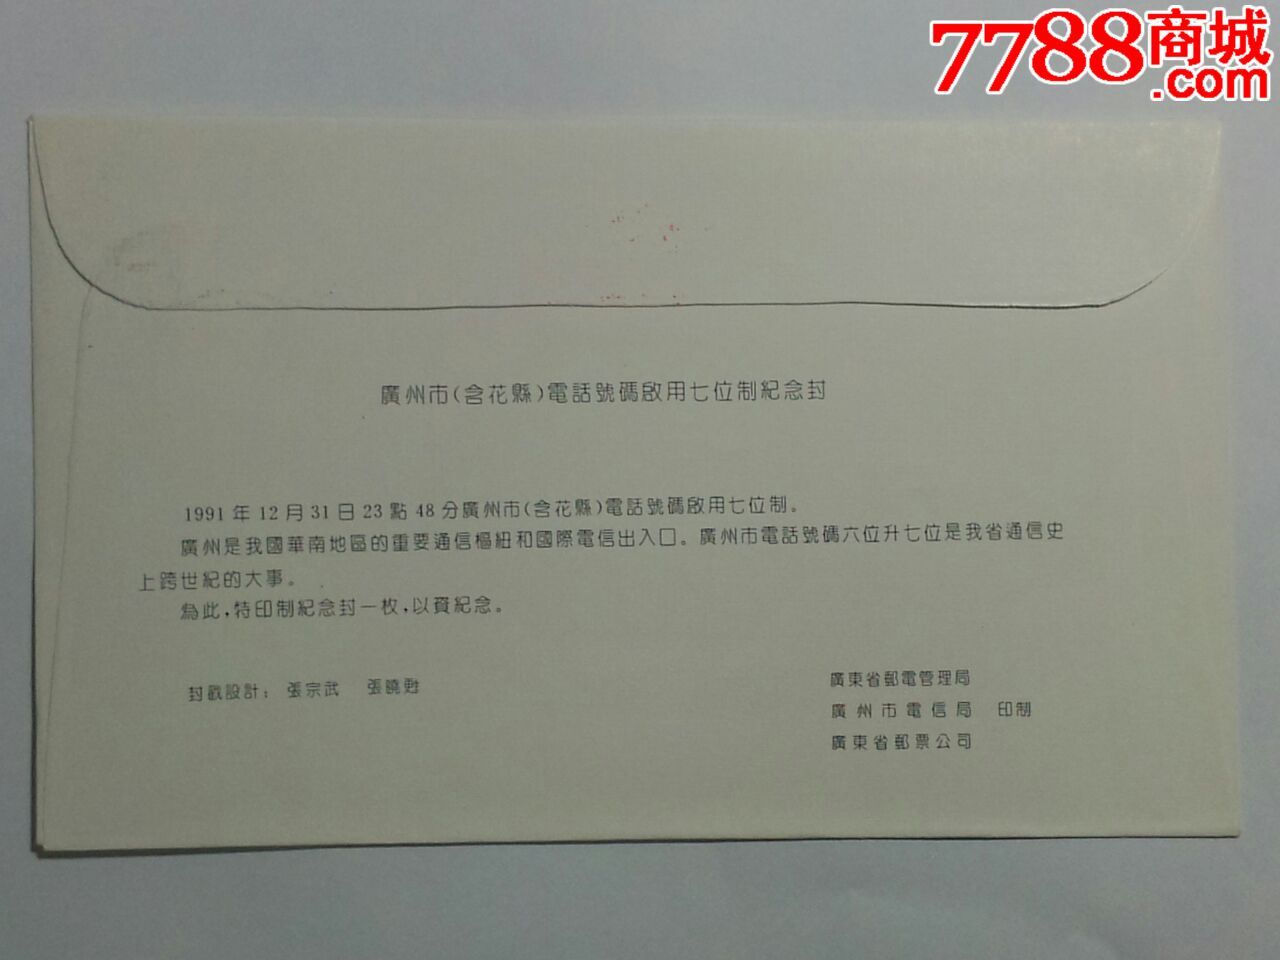 《广州市电话号码升七位数》纪念封(当日邮政